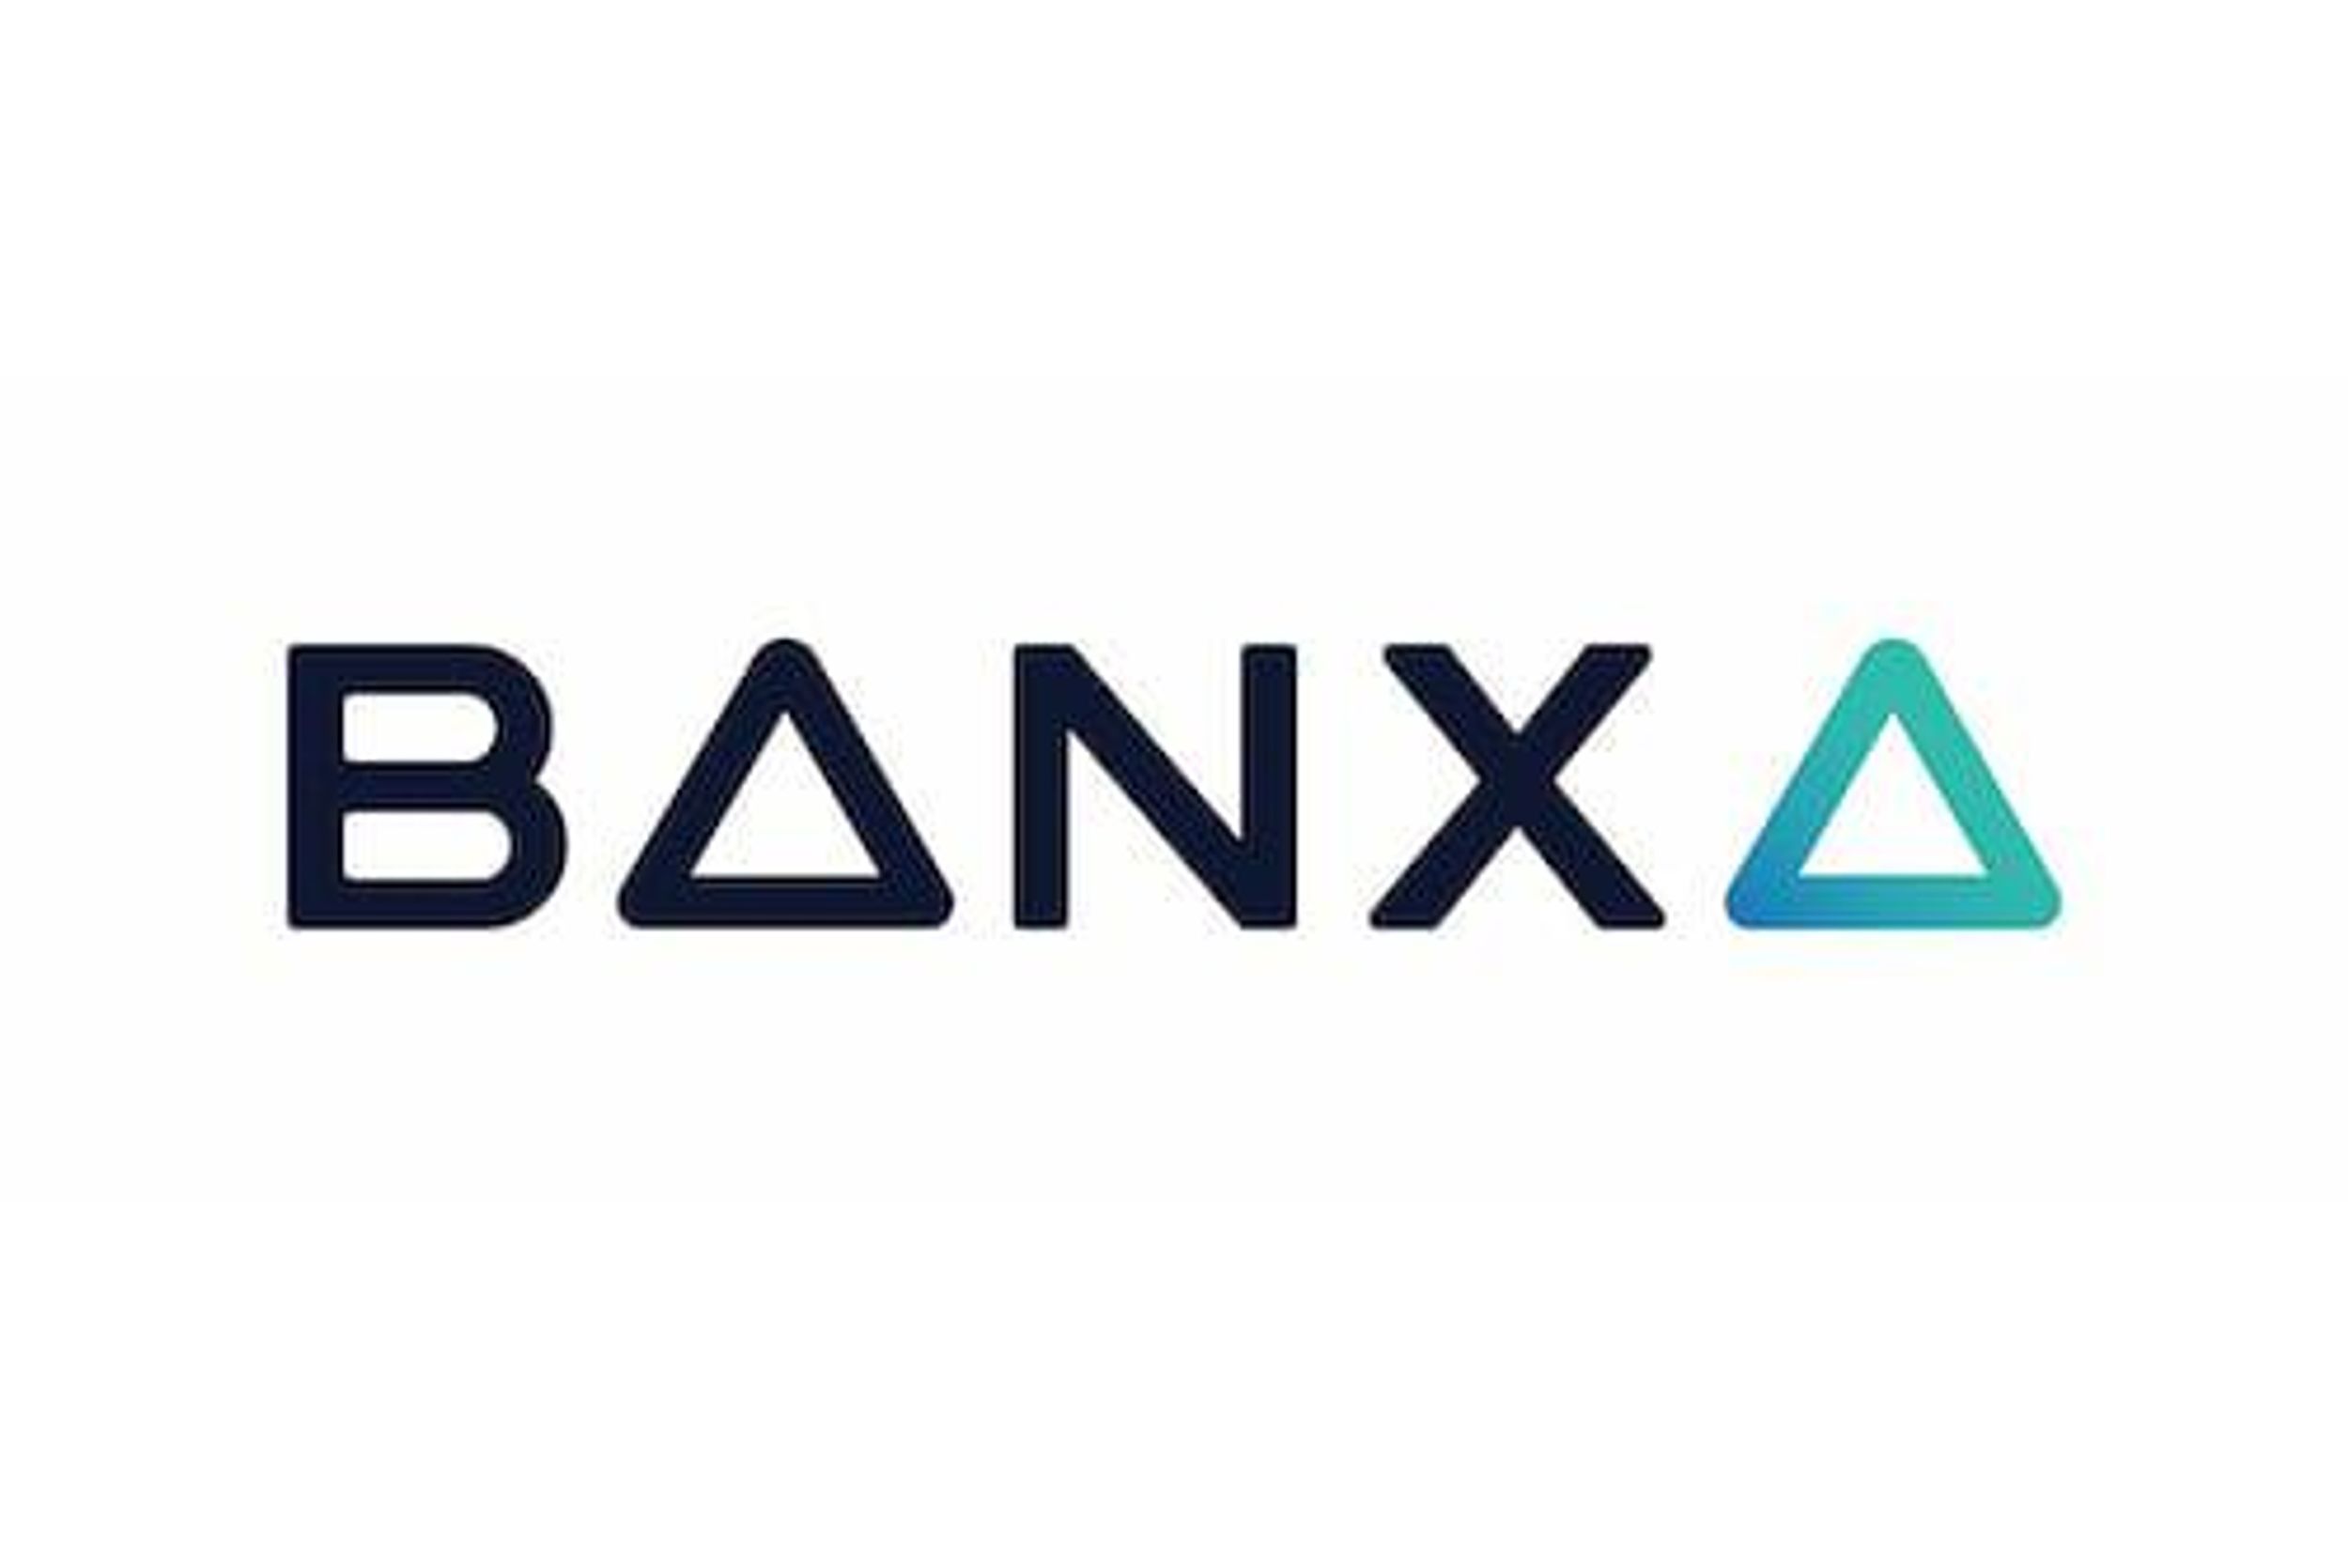 Banxa Records 337% YOY Increase for December Transaction Volume